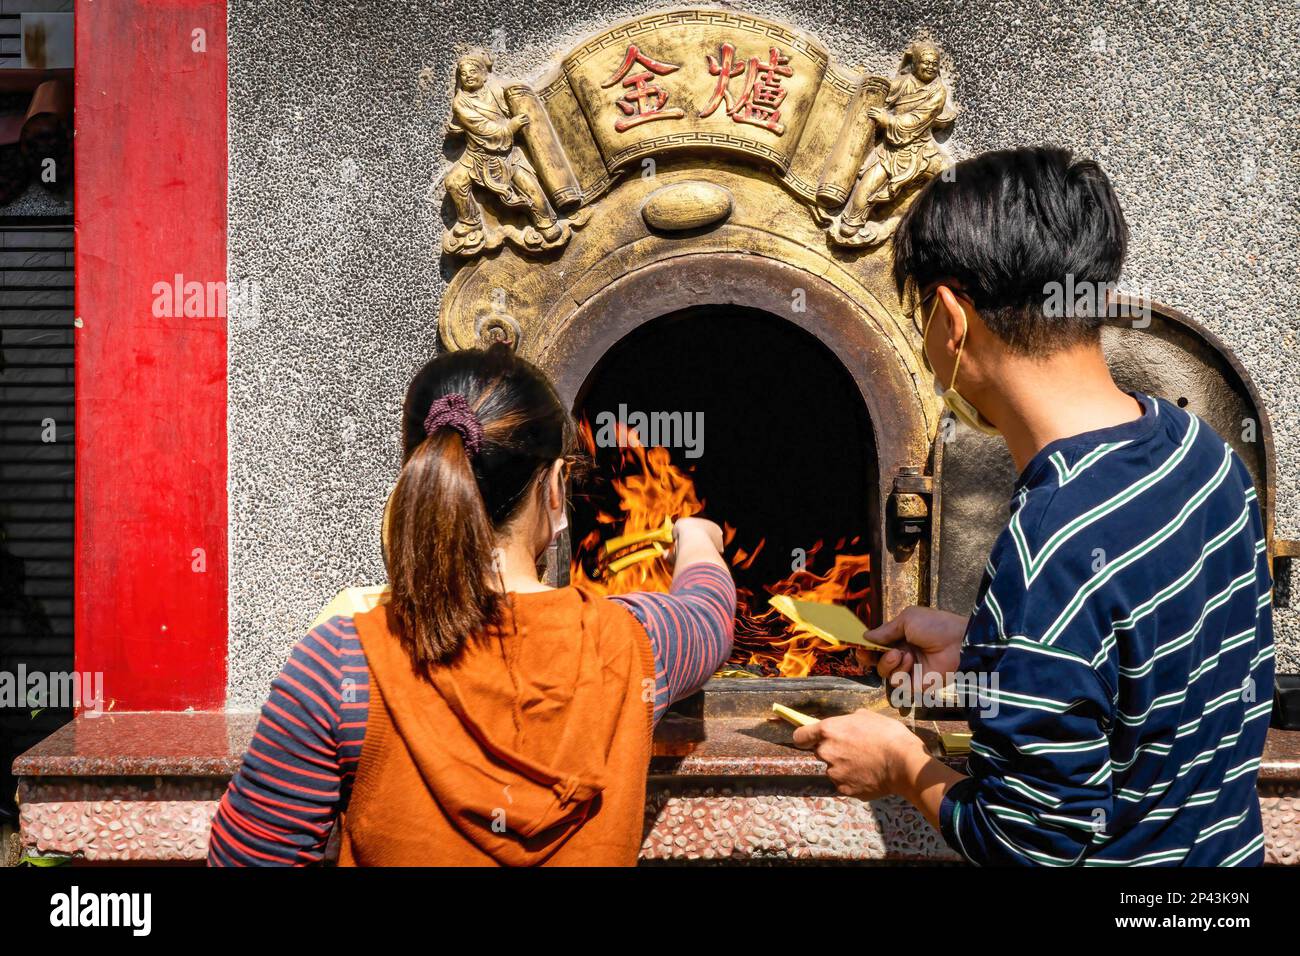 Buddhisten verbrennen Haufen Falschgeld als Teil eines Gebetsrituals. Das tägliche Leben in Taichung, der zweitgrößten Stadt Taiwans. Um mehr internationale Touristen anzulocken, kündigte die taiwanesische Regierung kürzlich an, dass sie 5000 Taiwan-Dollar (ca. 165 USD) als Teil eines Konjunkturpakets zur Unterstützung der Reisesubventionierung für Touristen bereitstellen werde. Stockfoto